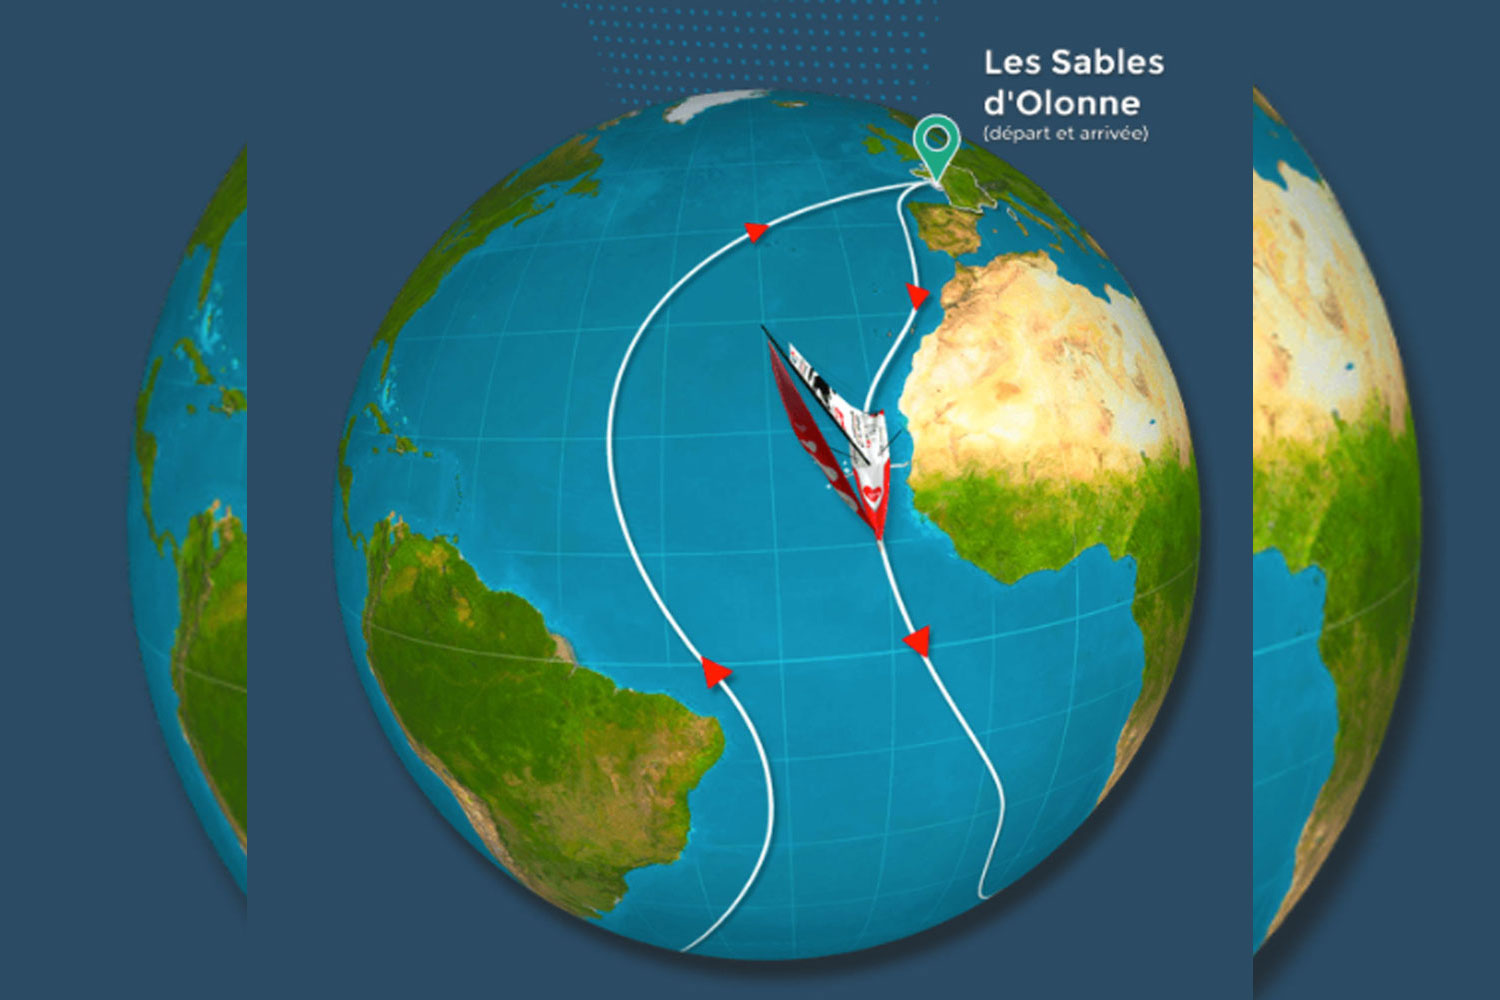 Le Vendée Globe est une course autour du monde. Elle commence par la descente de l’Atlantique jusqu’à l’Antarctique © Copie d’écran